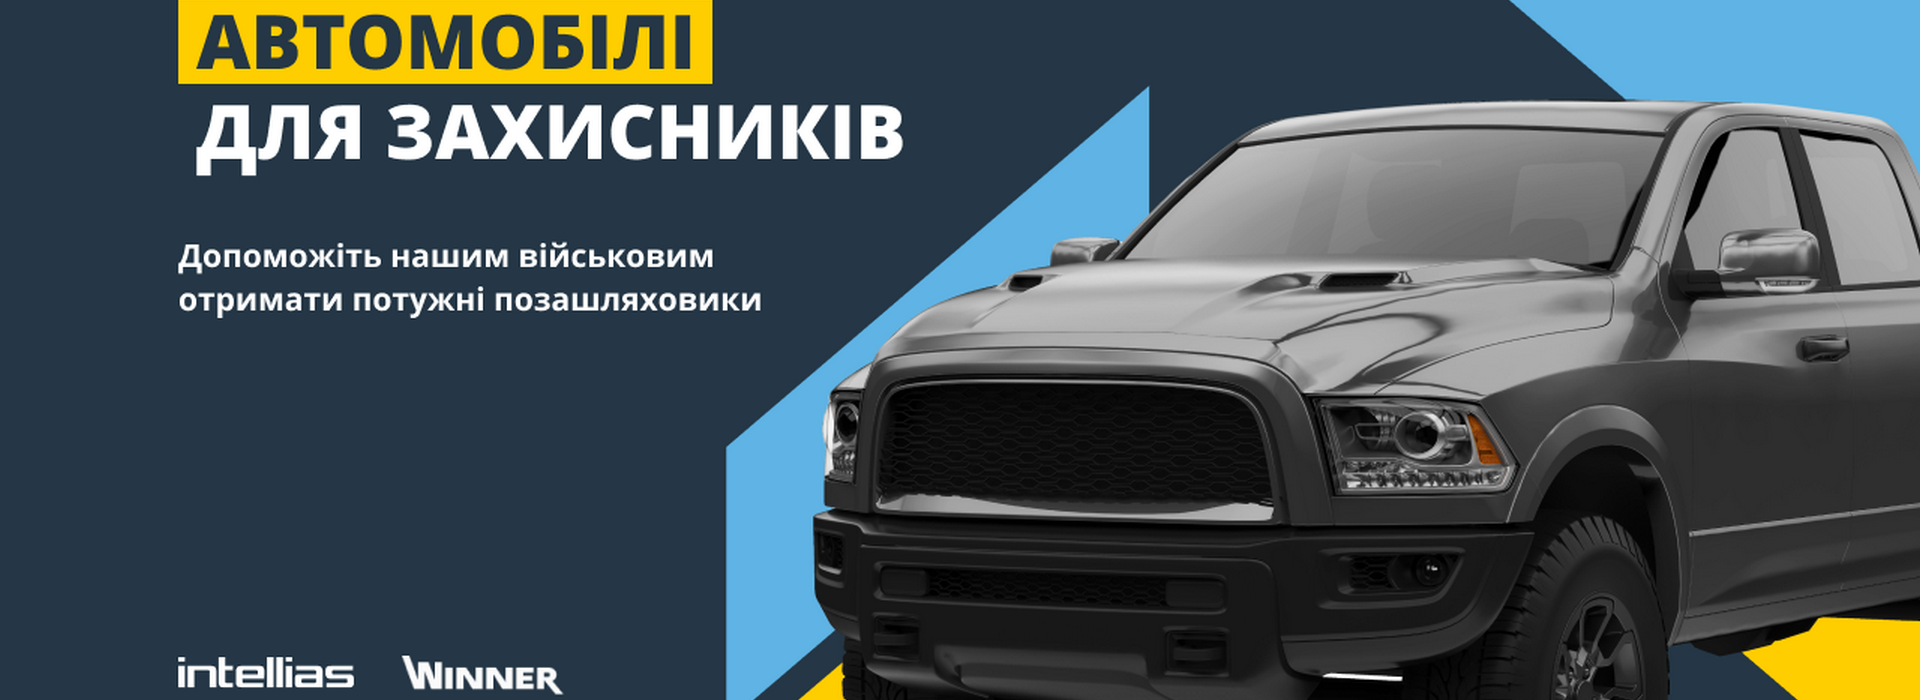 Авто для захисників: Intellias та Winner Group Ukraine об’єднуються для допомоги Україні